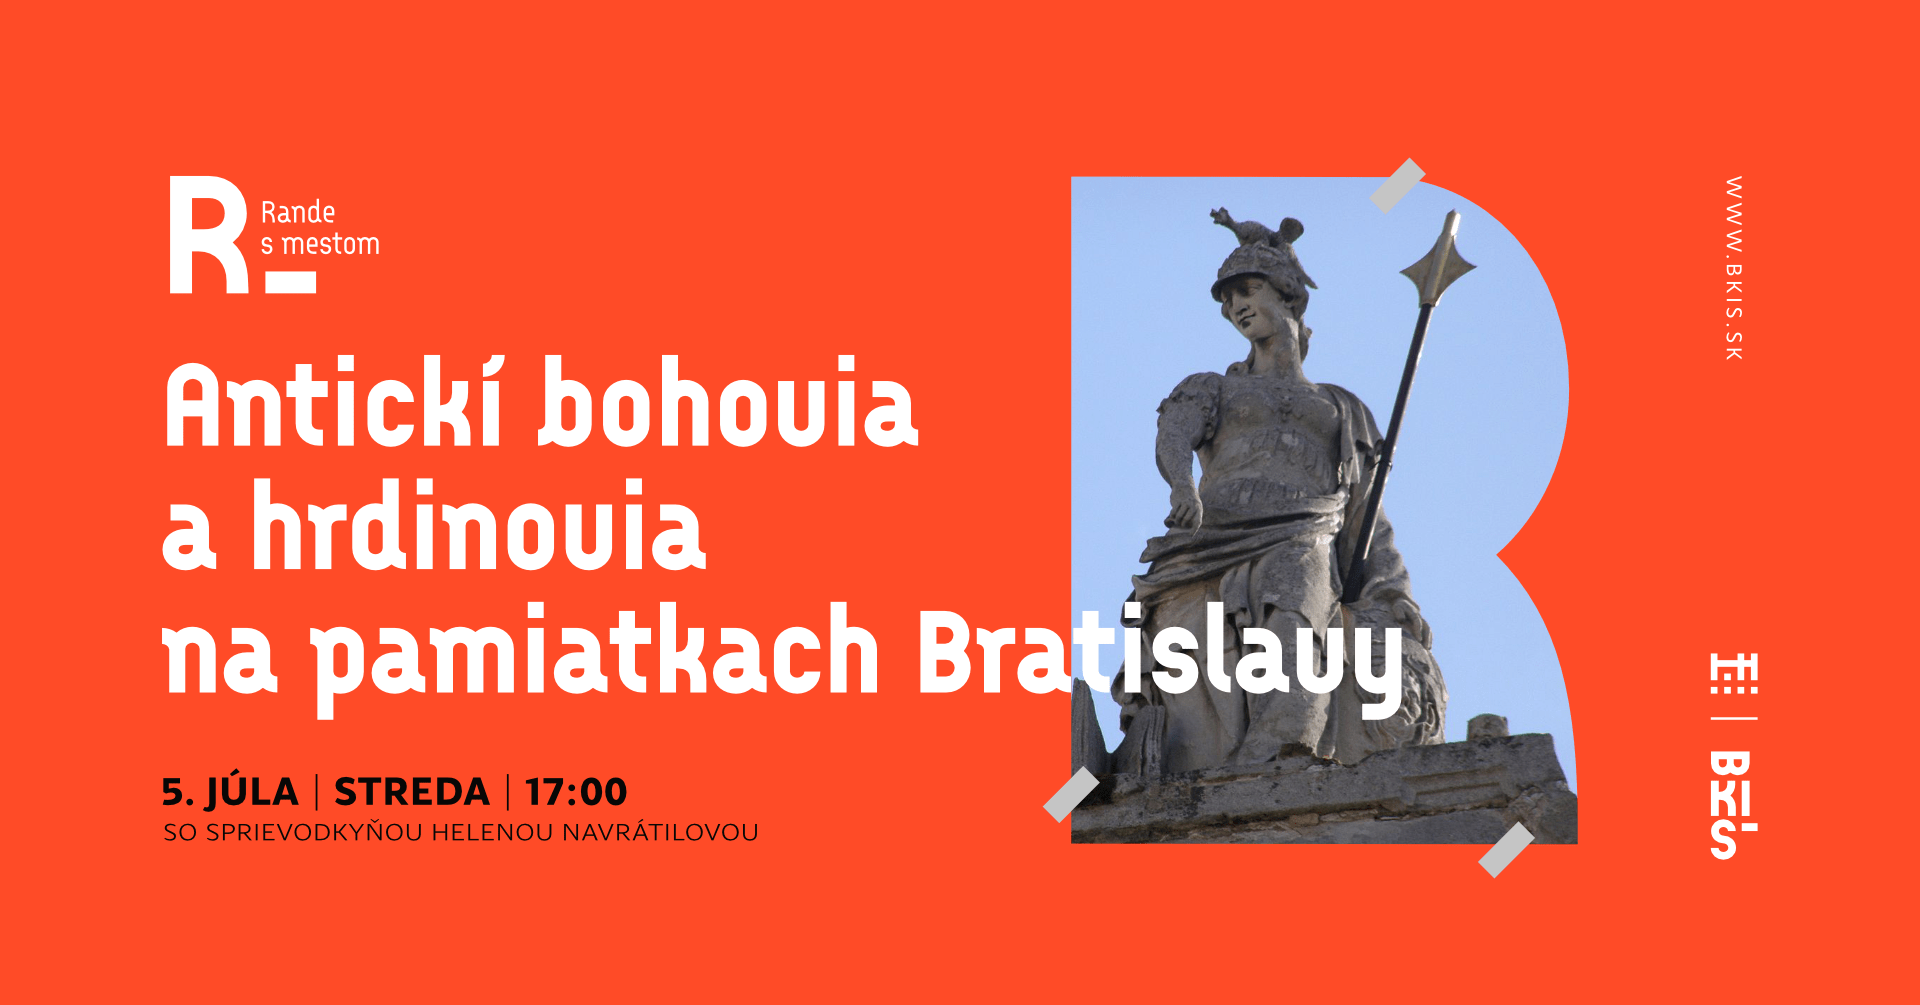 Rande s mestom: Antickí bohovia a hrdinovia na pamiatkach Bratislavy